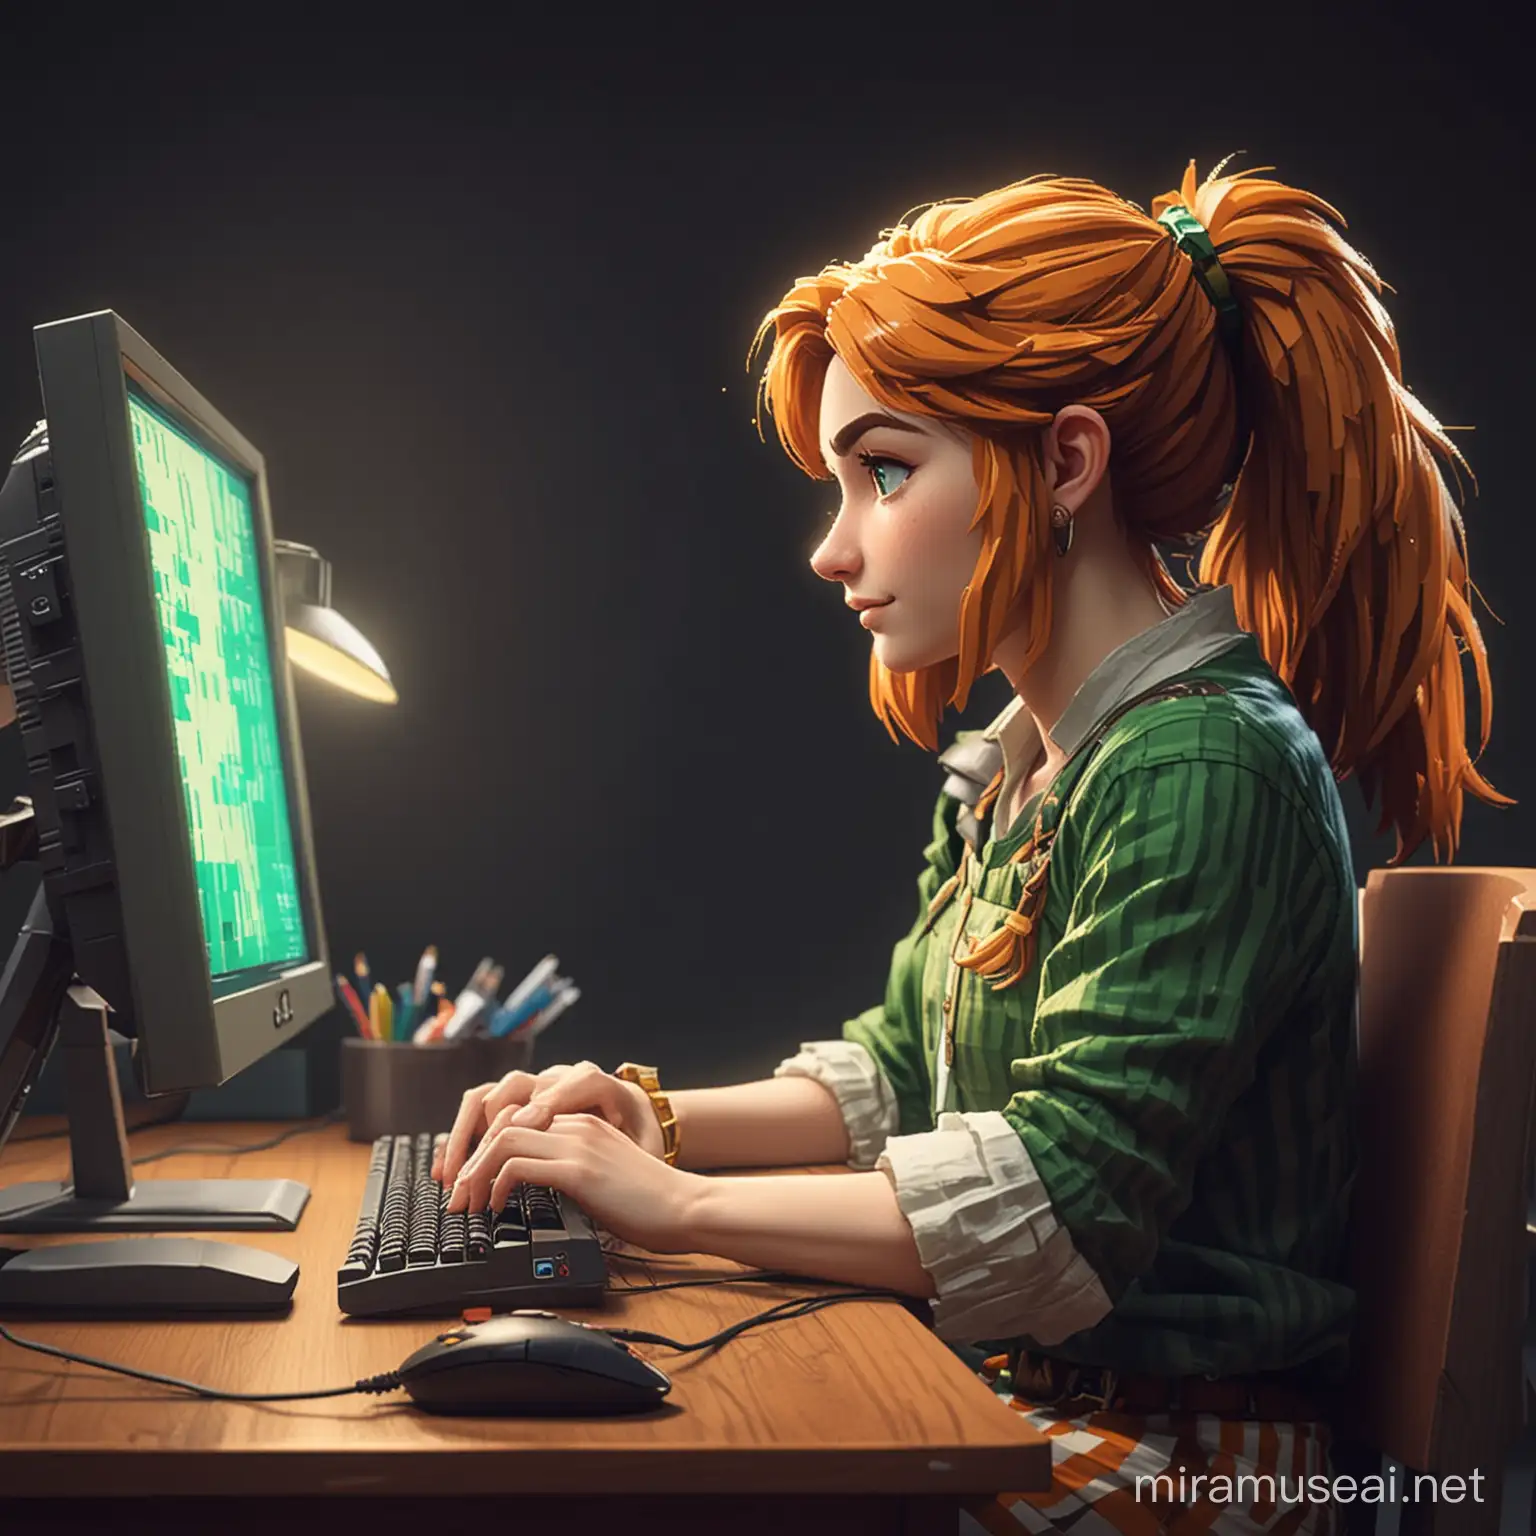 Pixel Art of Character Working on Computer in Zelda Theme